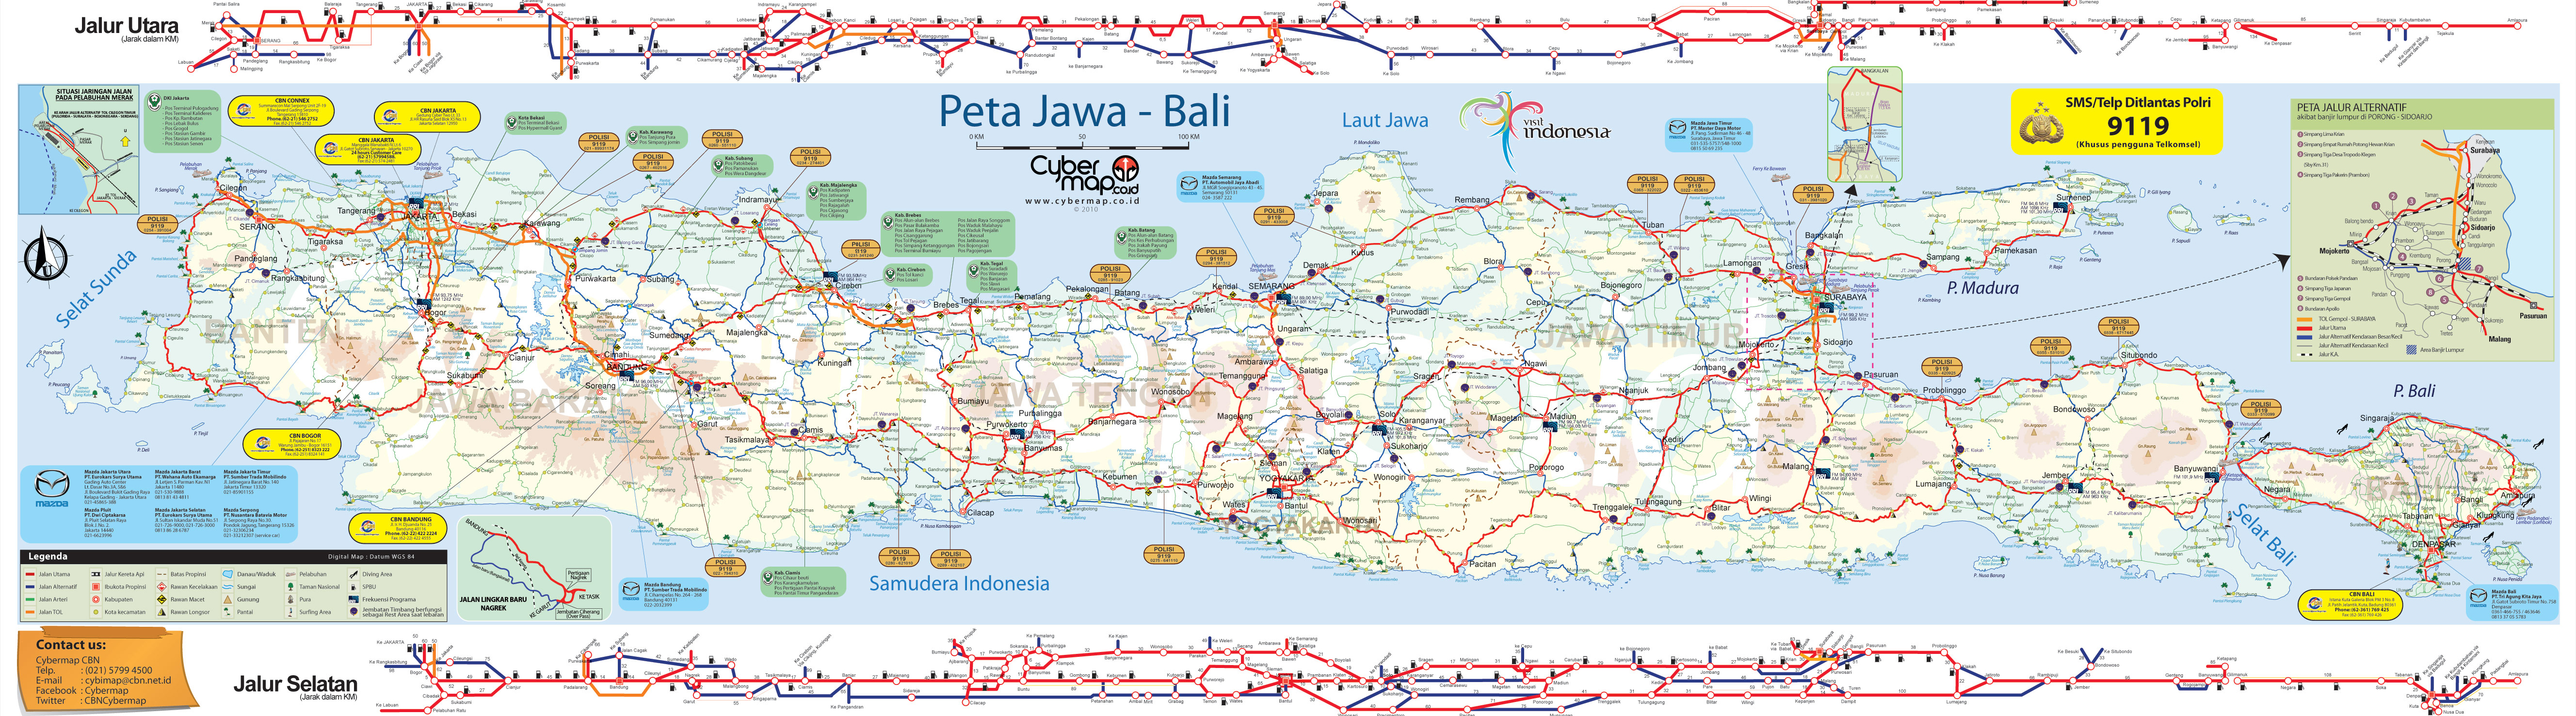 Download Peta Jalur Mudik 2010 (Sumatra-Jawa-Bali 